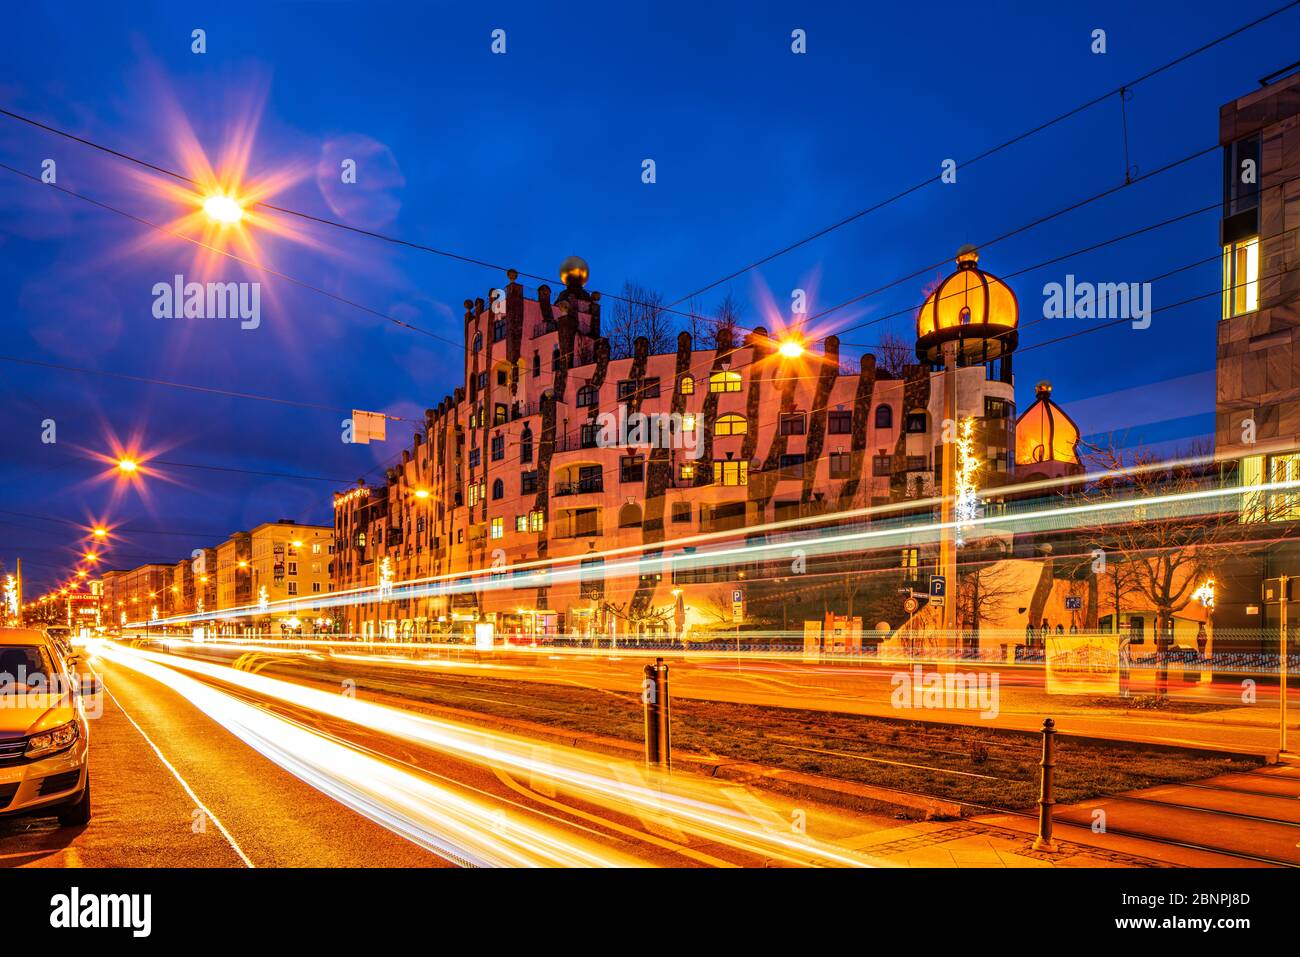 Alemania, Sajonia-Anhalt, Magdeburg, la Ciudadela Verde, frente a las huellas ligeras del tranvía, tiro de noche Foto de stock